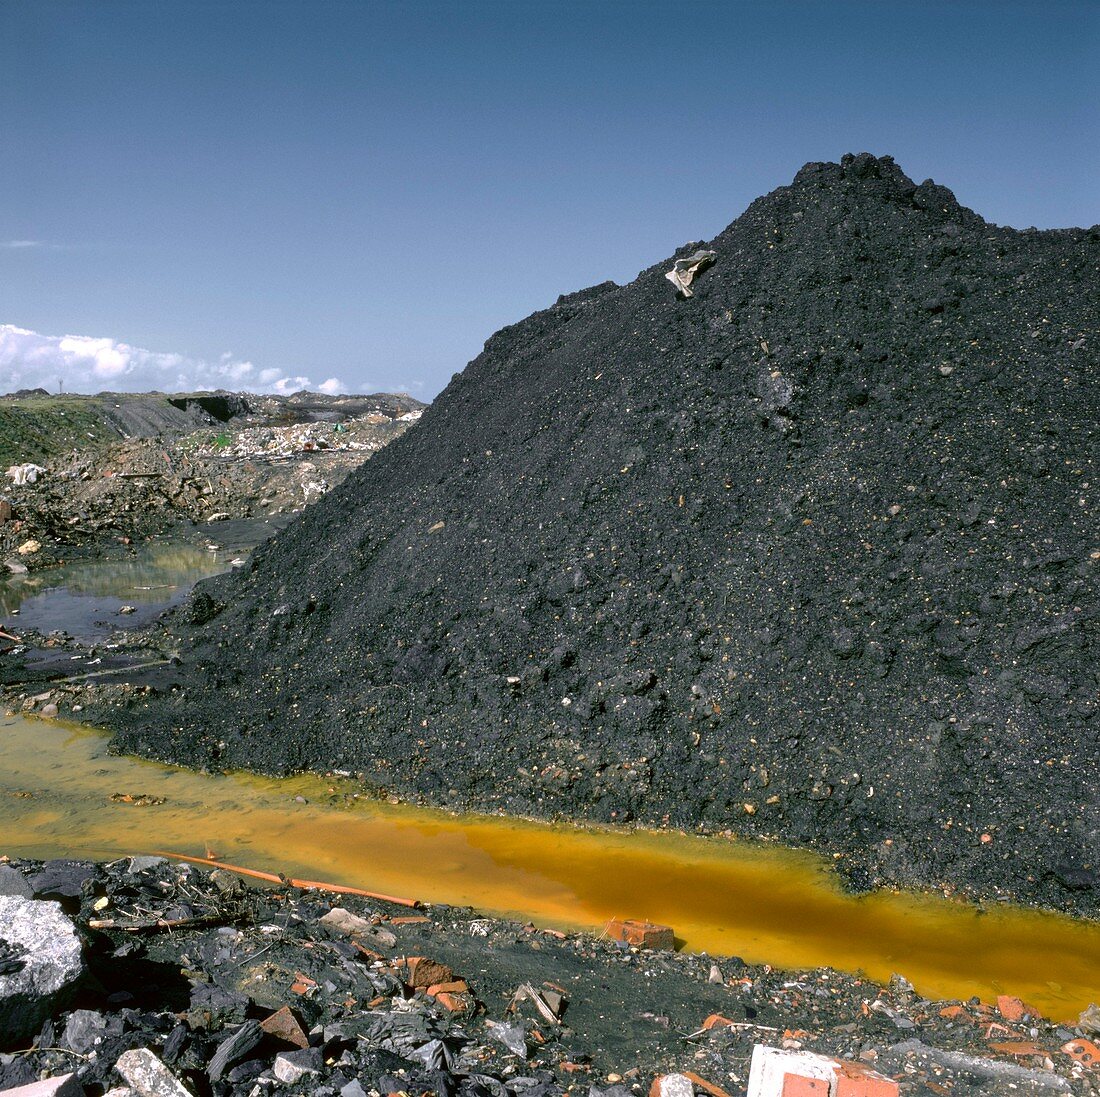 Mining waste,UK